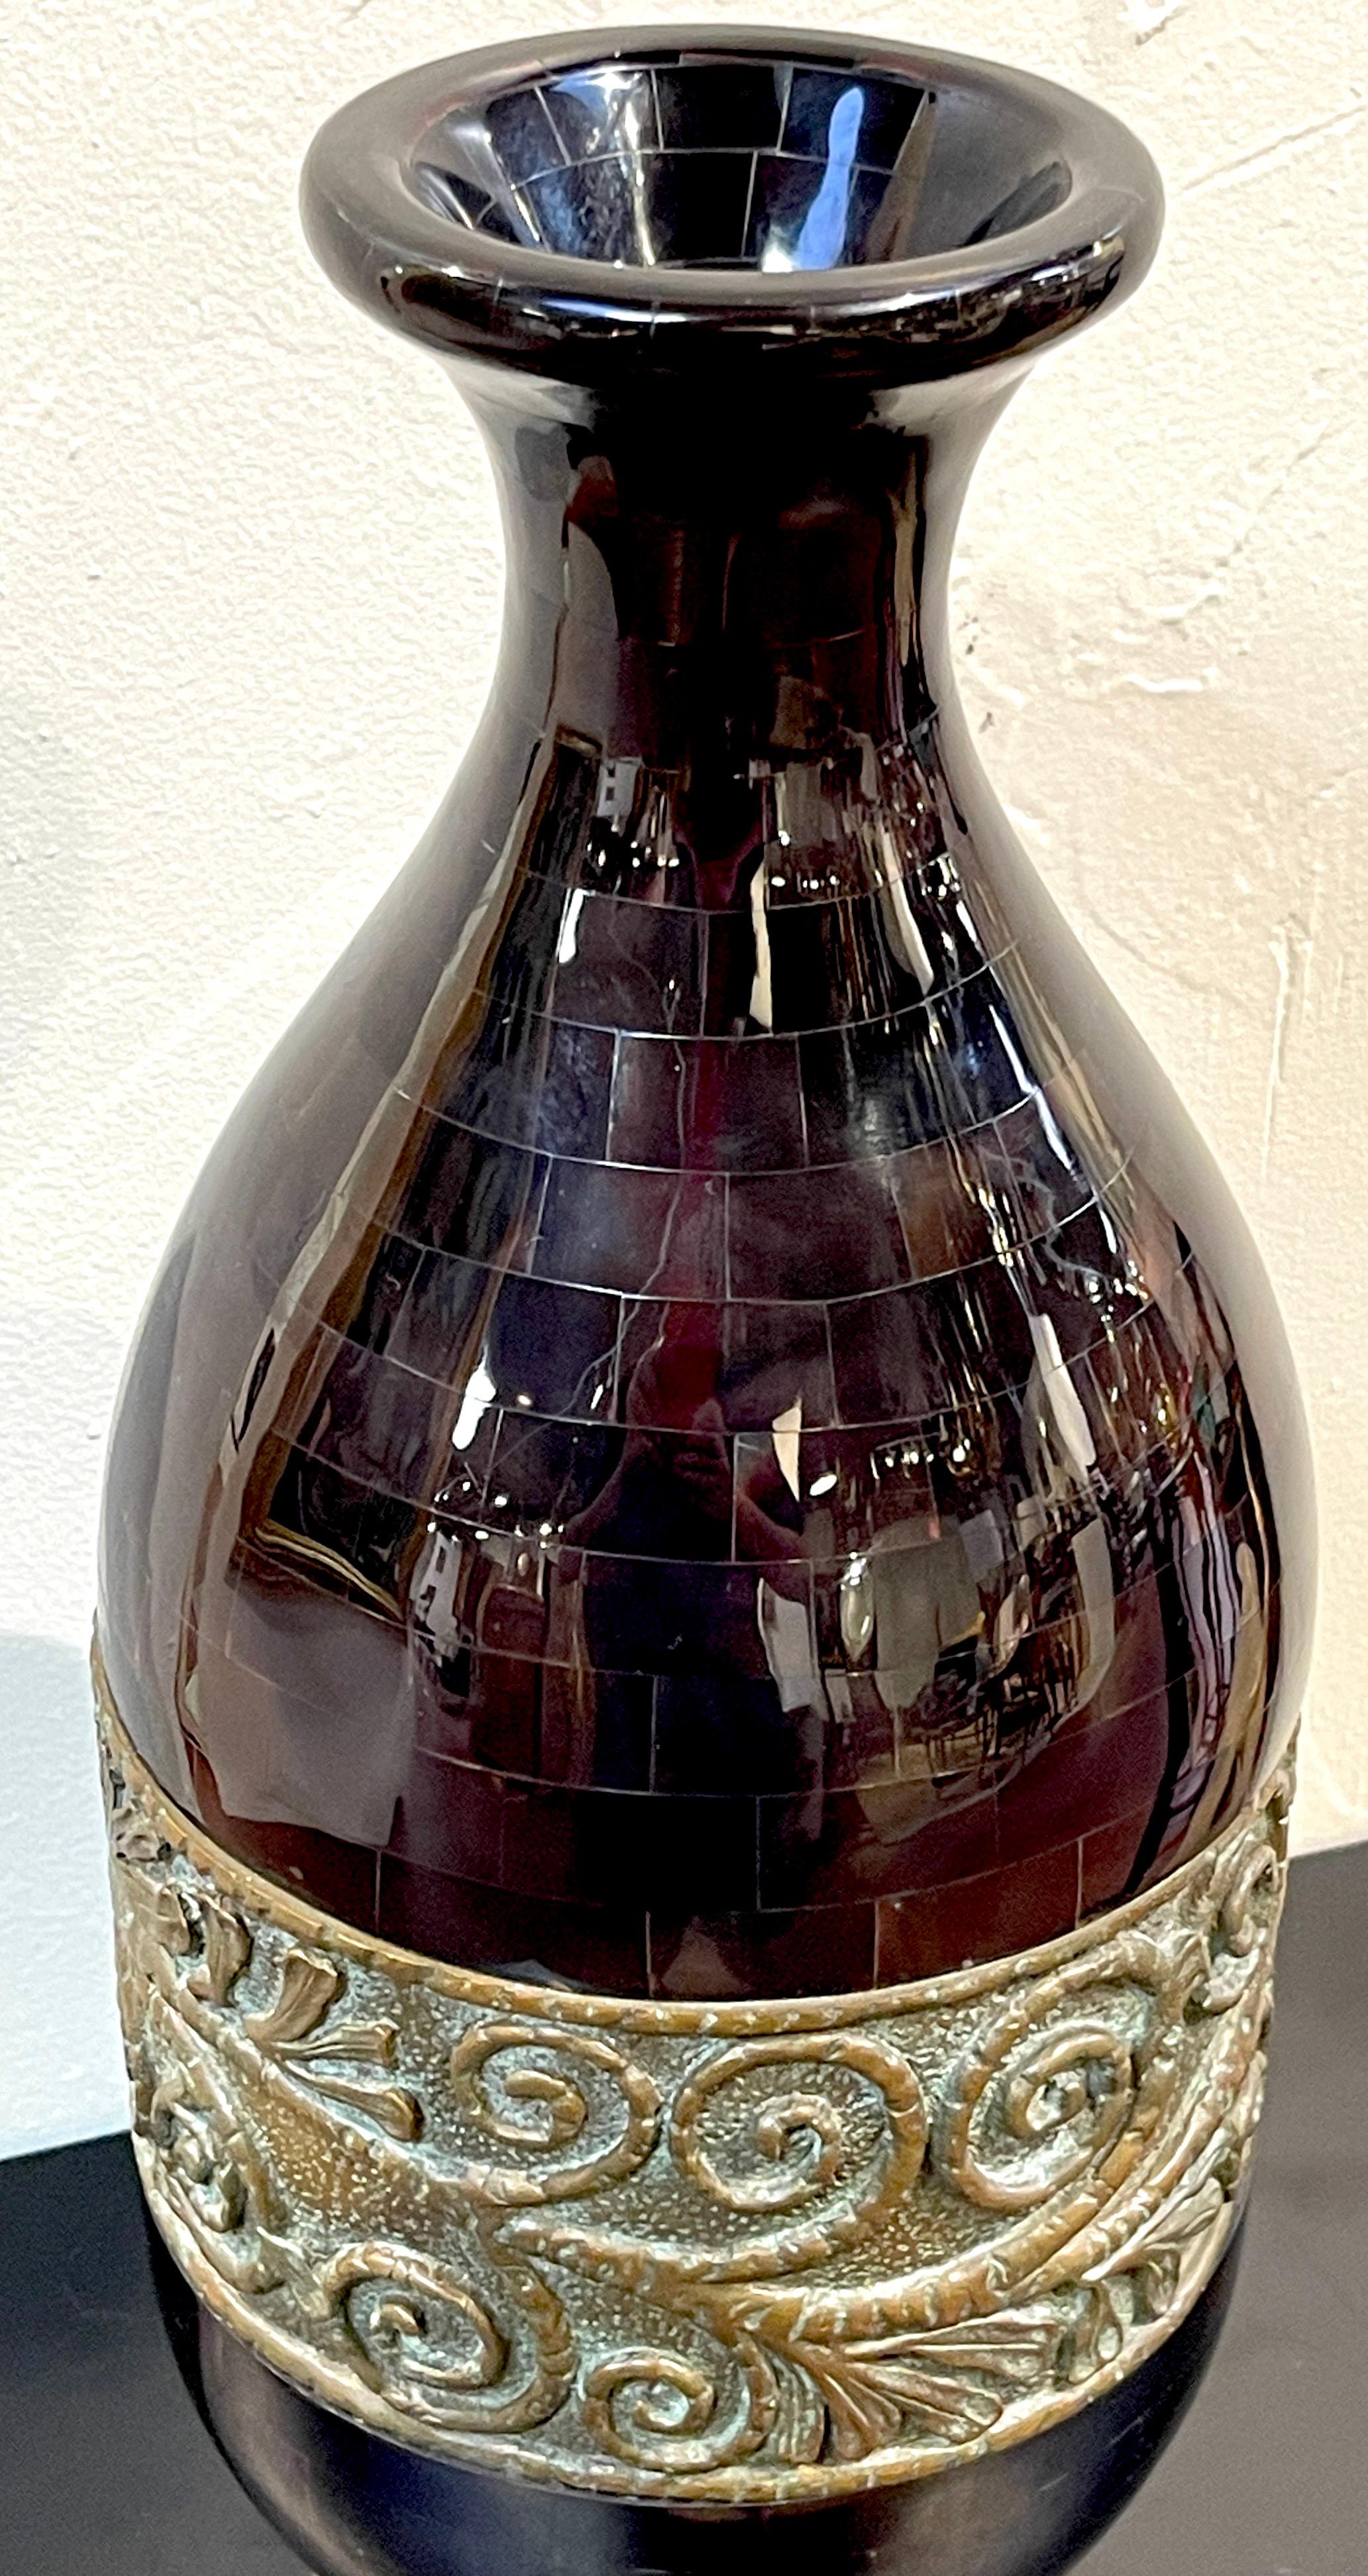 Vase moderne en corne polie et bronze patiné par Maitland Smith 
Améliorez votre intérieur  avec ce vase moderne en corne polie et bronze patiné, un vase remarquable créé par Maitland Smith. Ce vase incarne l'élégance contemporaine et l'artisanat